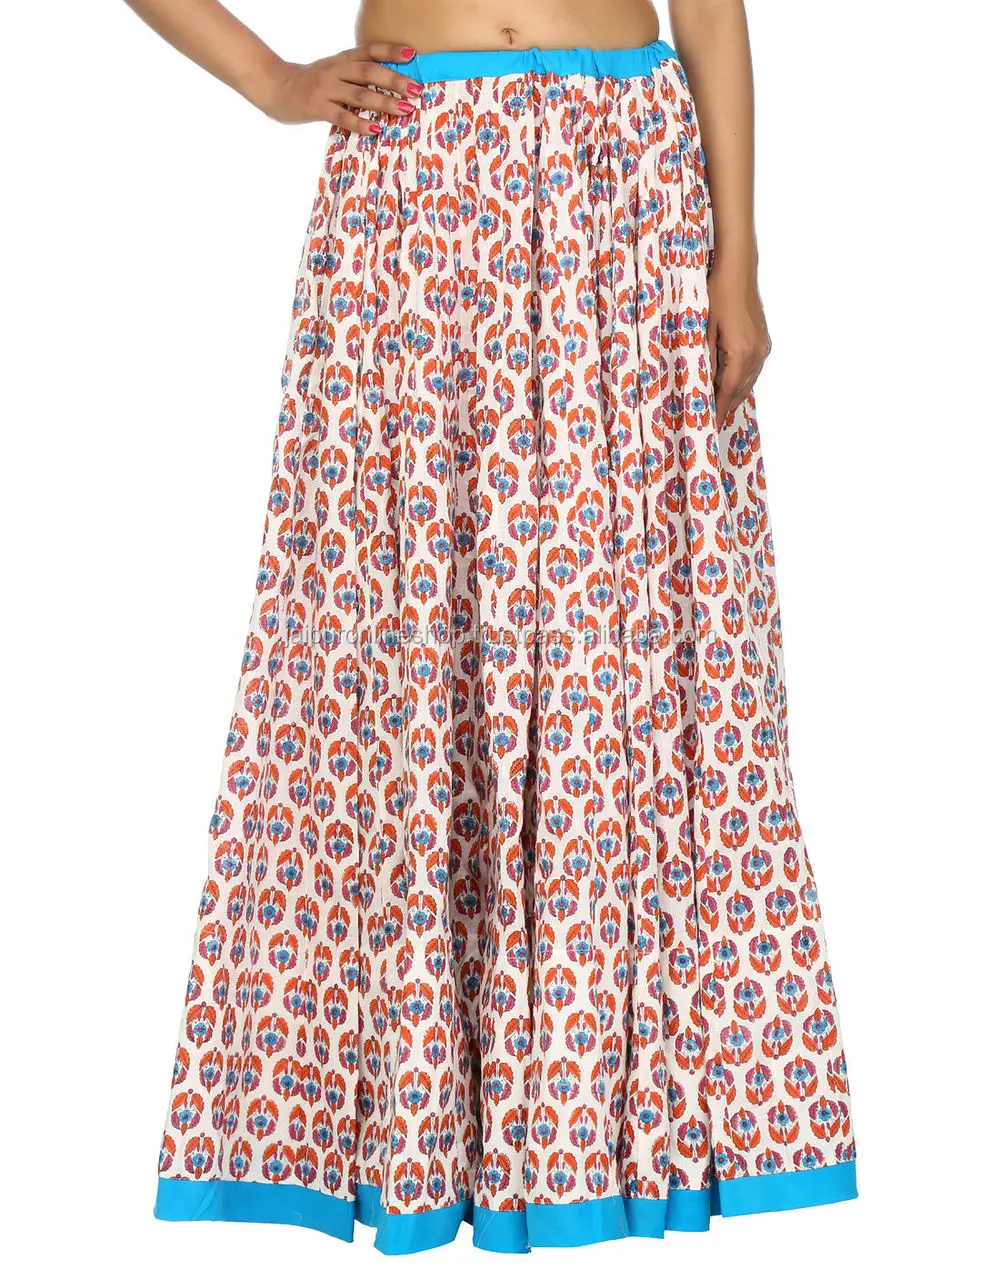 Buy Full Designer Anarkali Style Indian Long Skirts Online - Buy ...